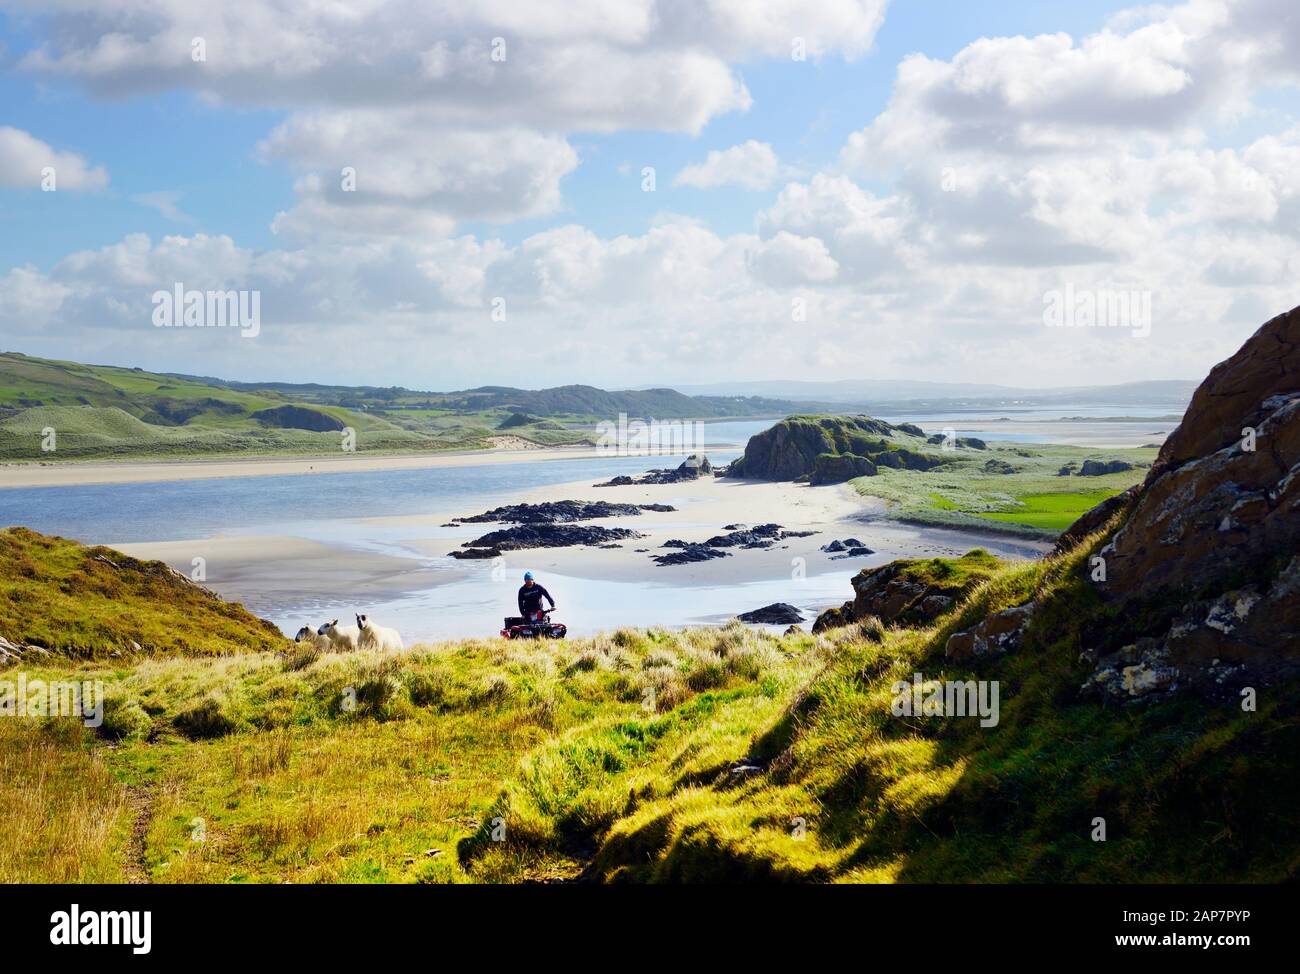 Península De Inishowen, Donegal, Irlanda. En la Isla de Doagh mirando al S.E. sobre la bahía de Trawbreaga. Granjero en quad bicicleta manejando ovejas de la colina. Verano Foto de stock